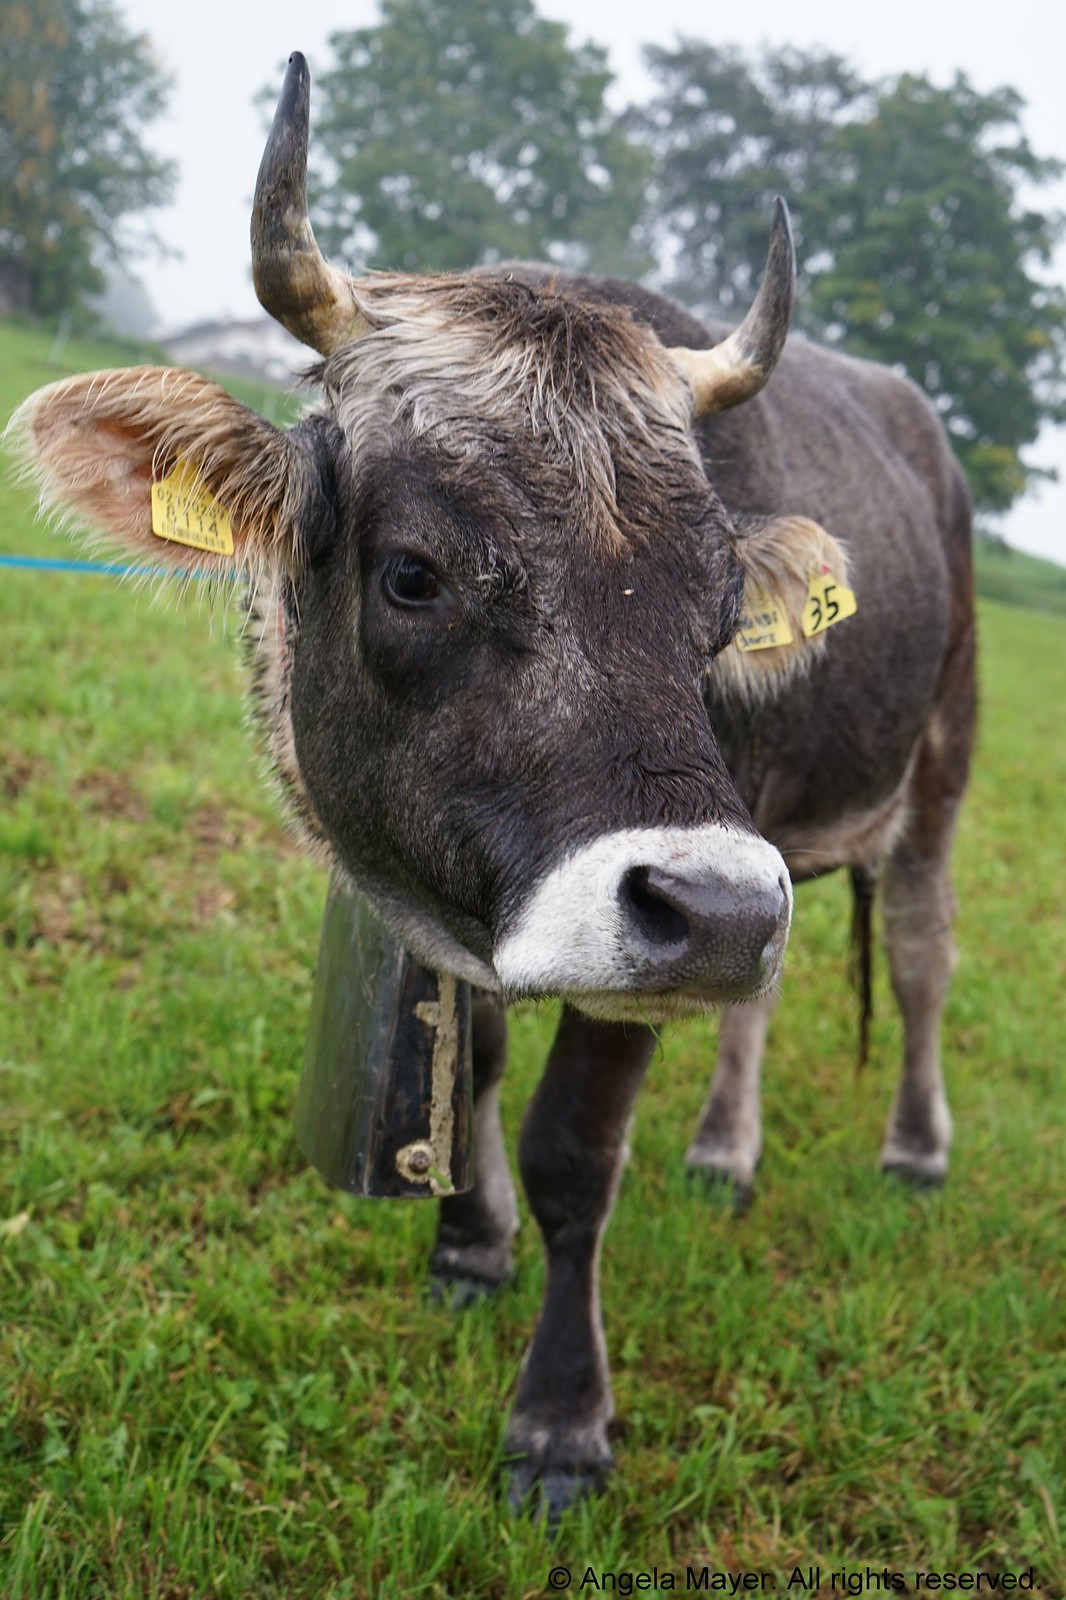 Cow at Tuffalm